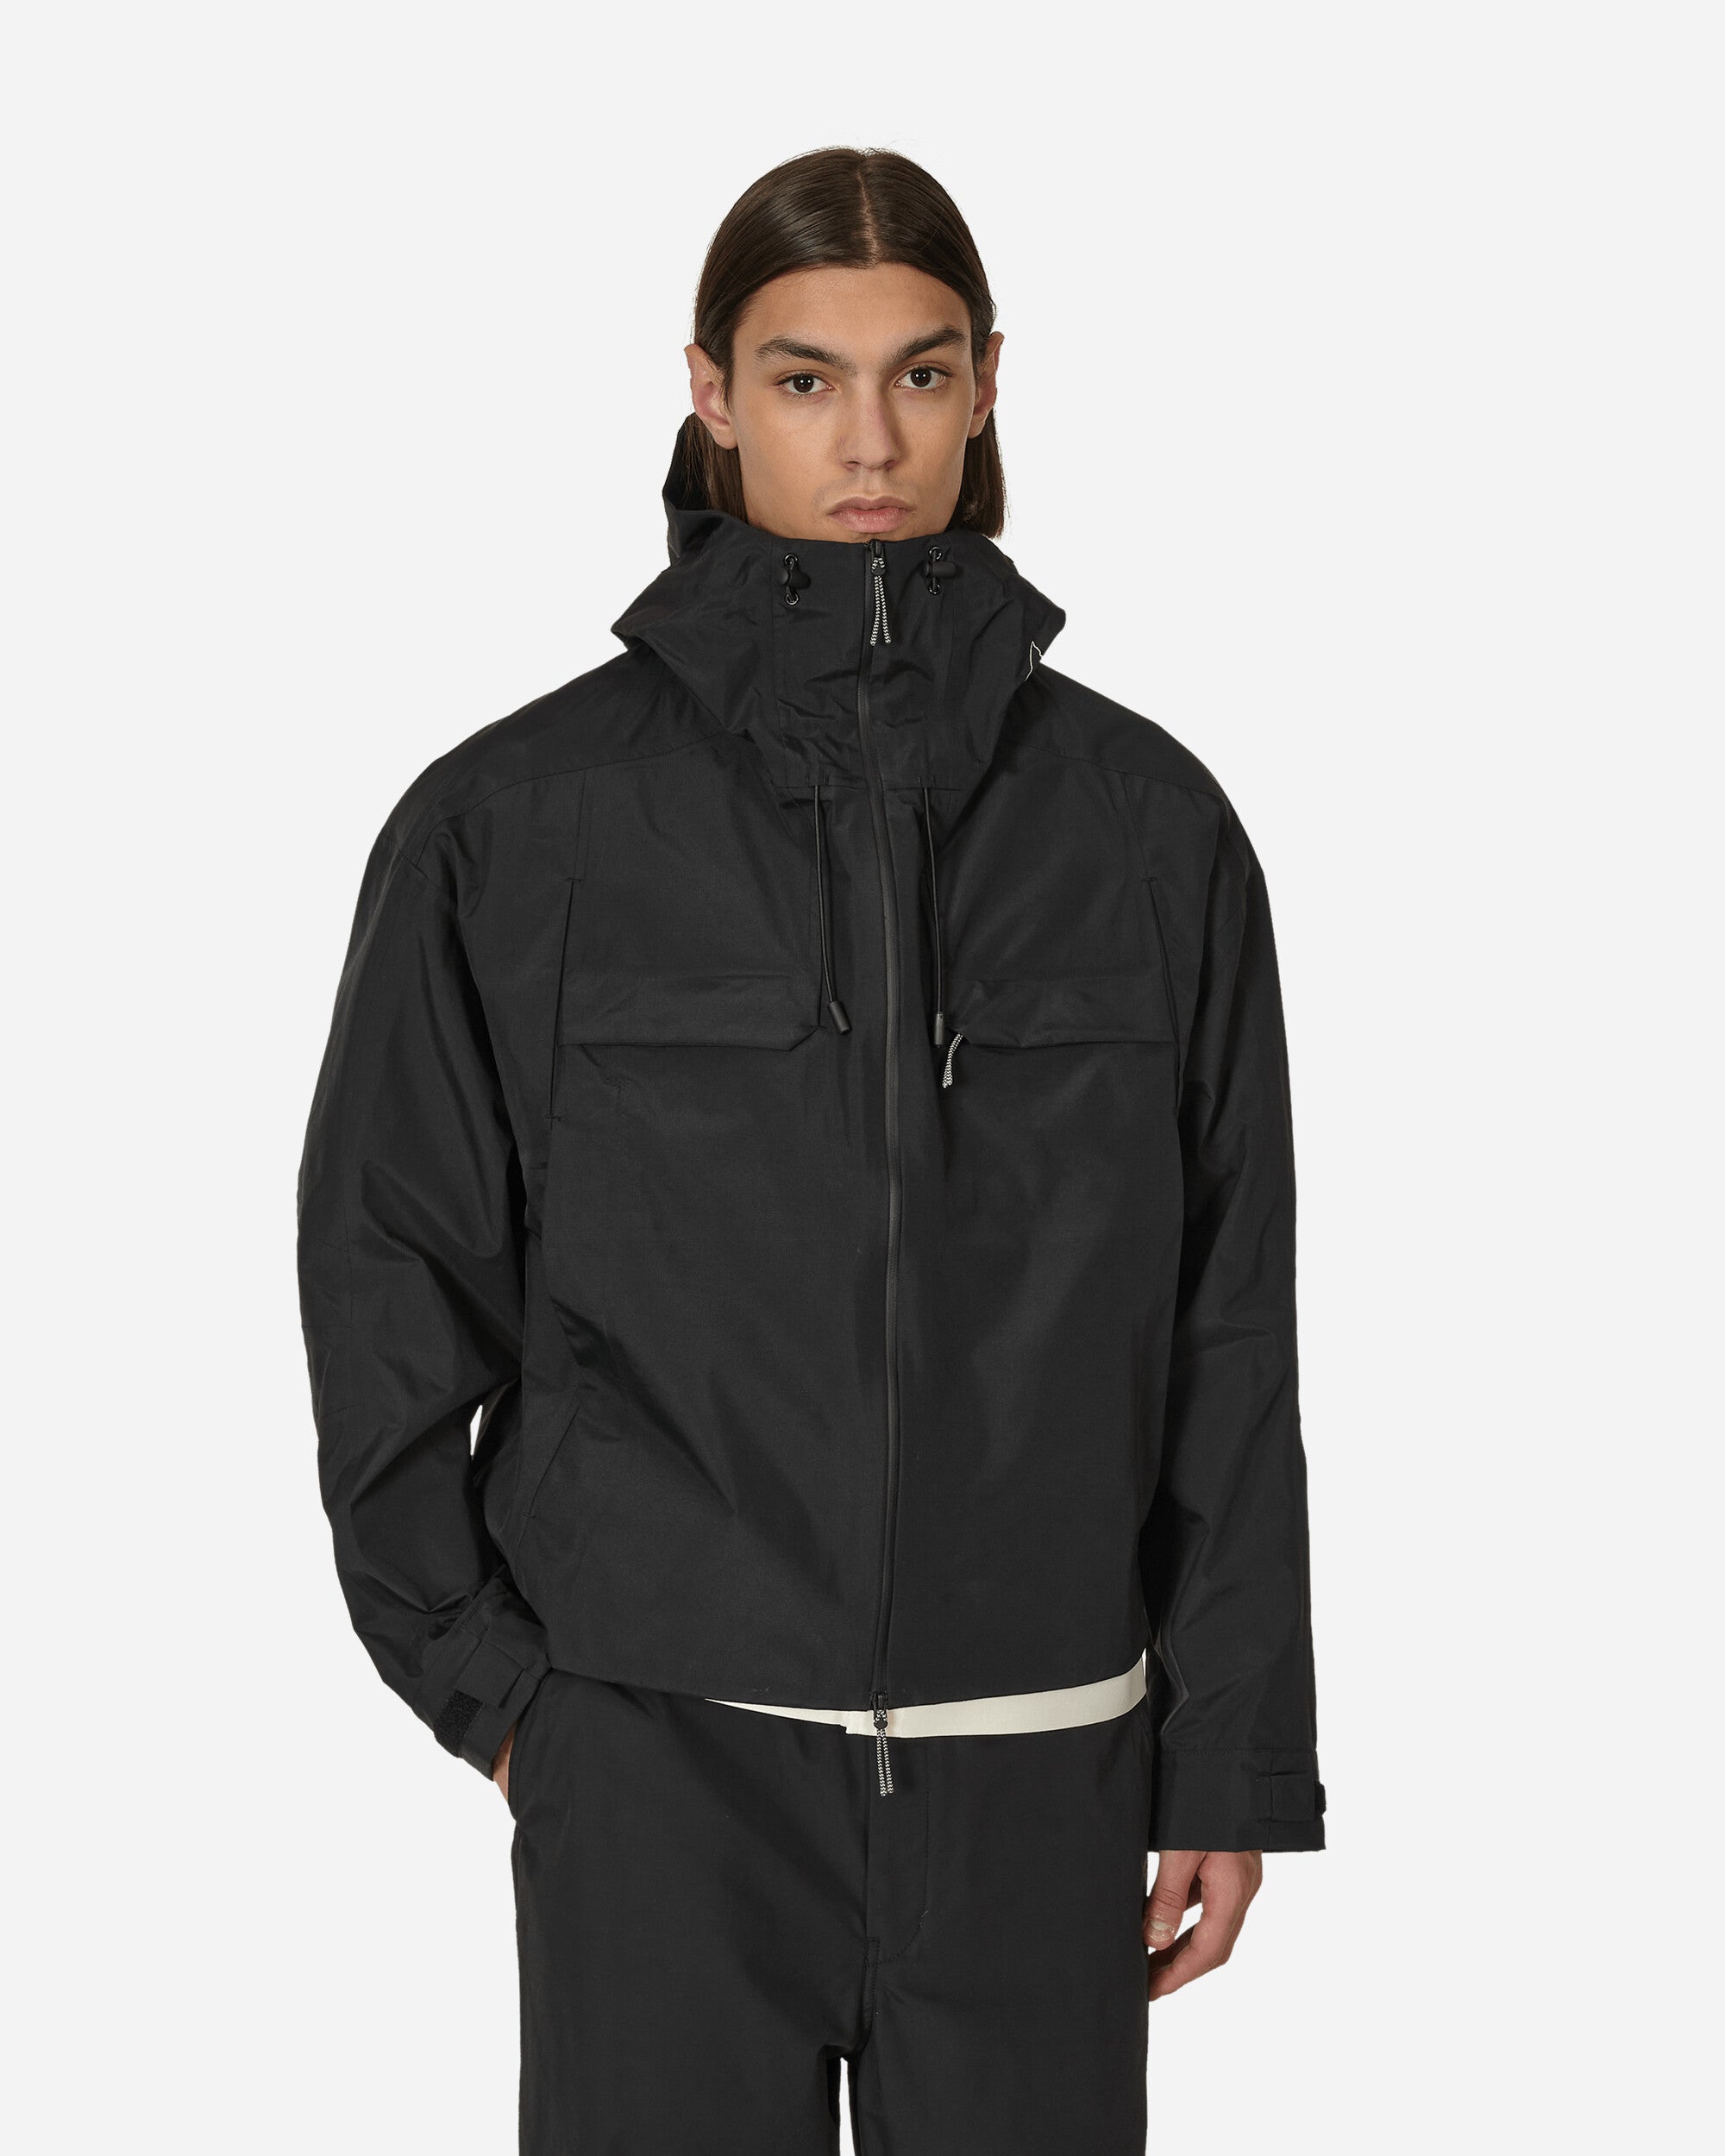 ROA Hardshell Black Coats and Jackets Jackets RBM0035FA30 1235750